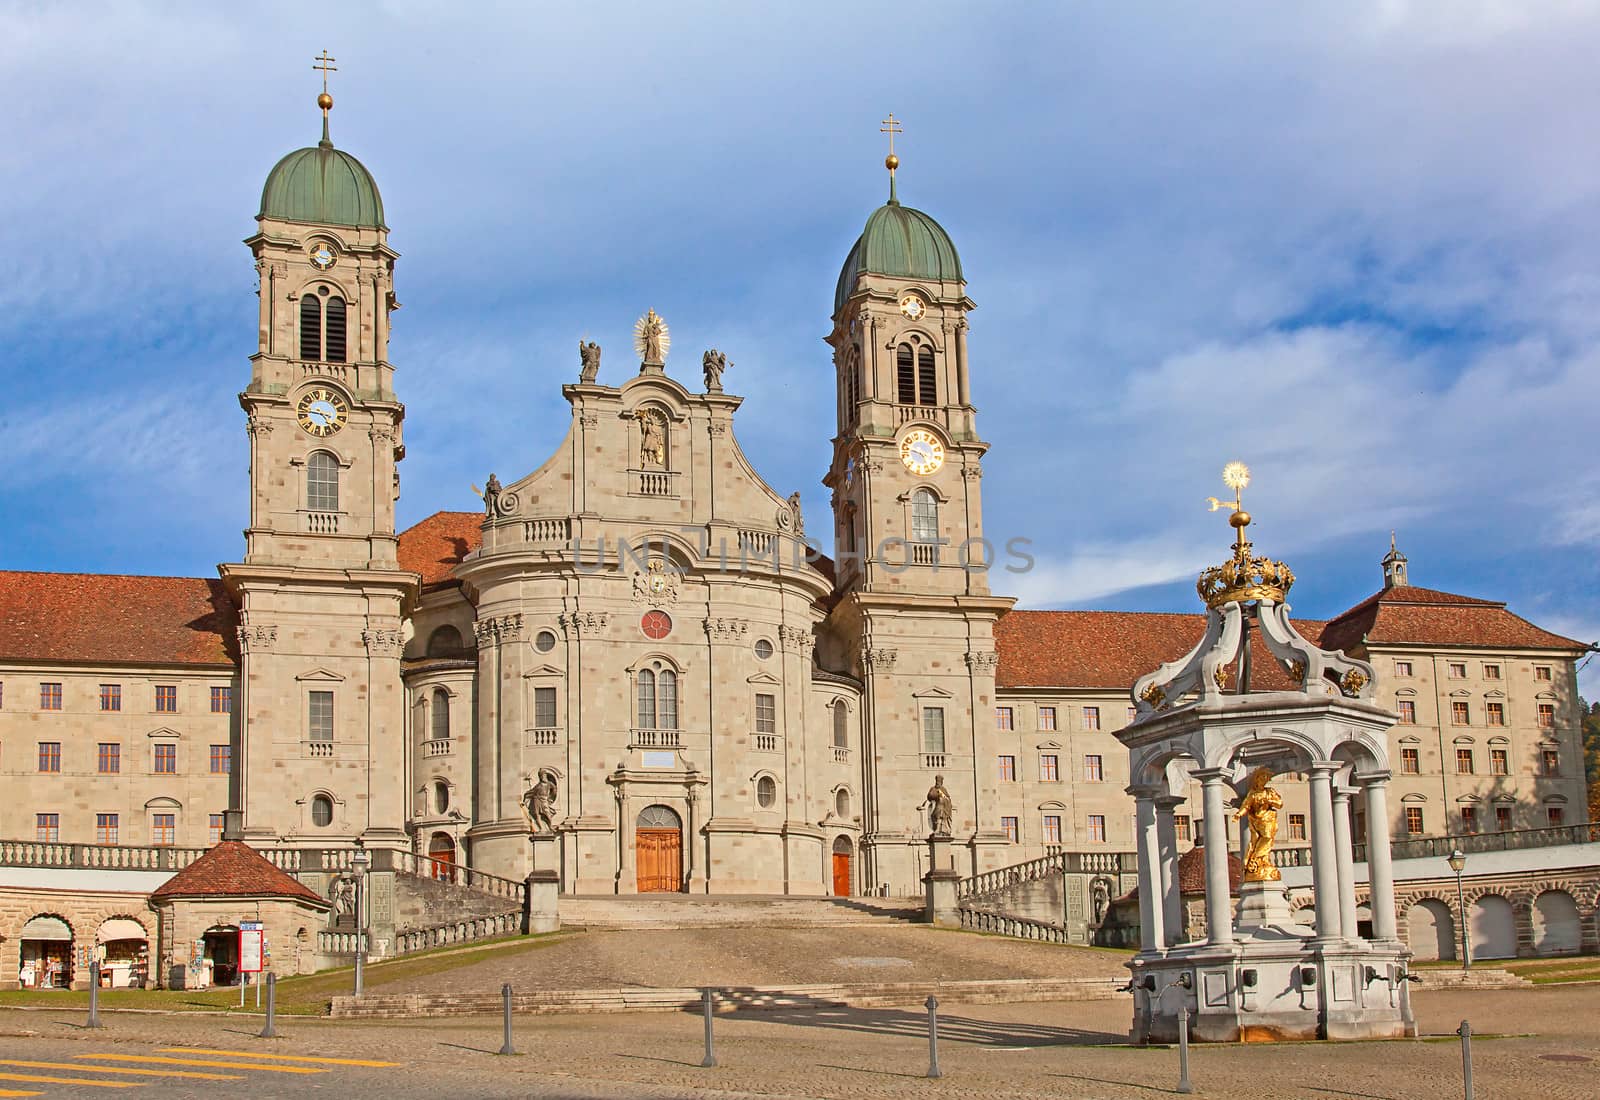 Benedictine abbey of Einsiedeln near Zurich, Switzerland